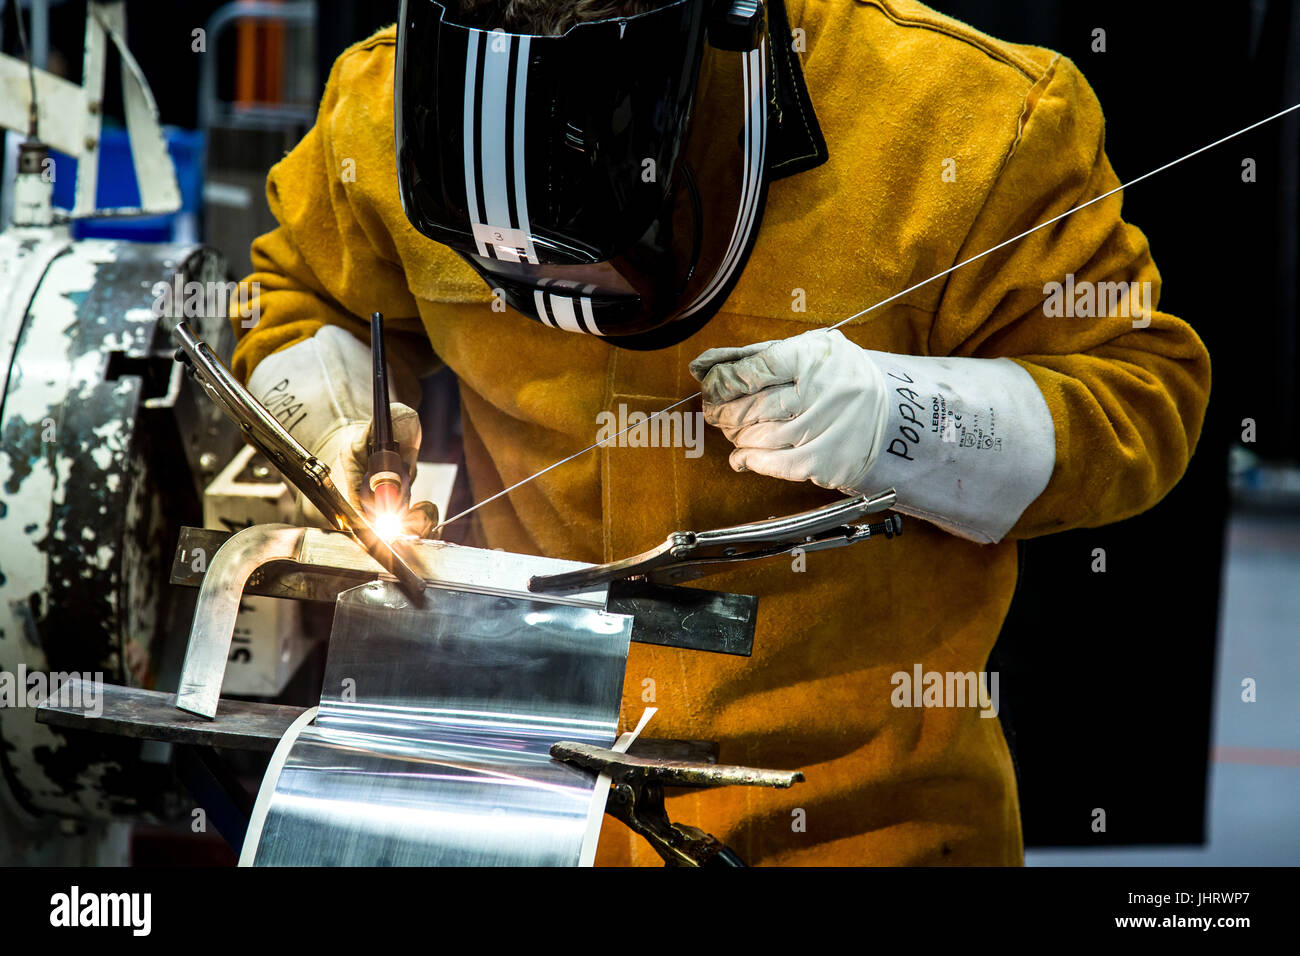 Un soudeur travaillant sur une pièce métallique dans un environnement industriel portant un masque de protection Banque D'Images